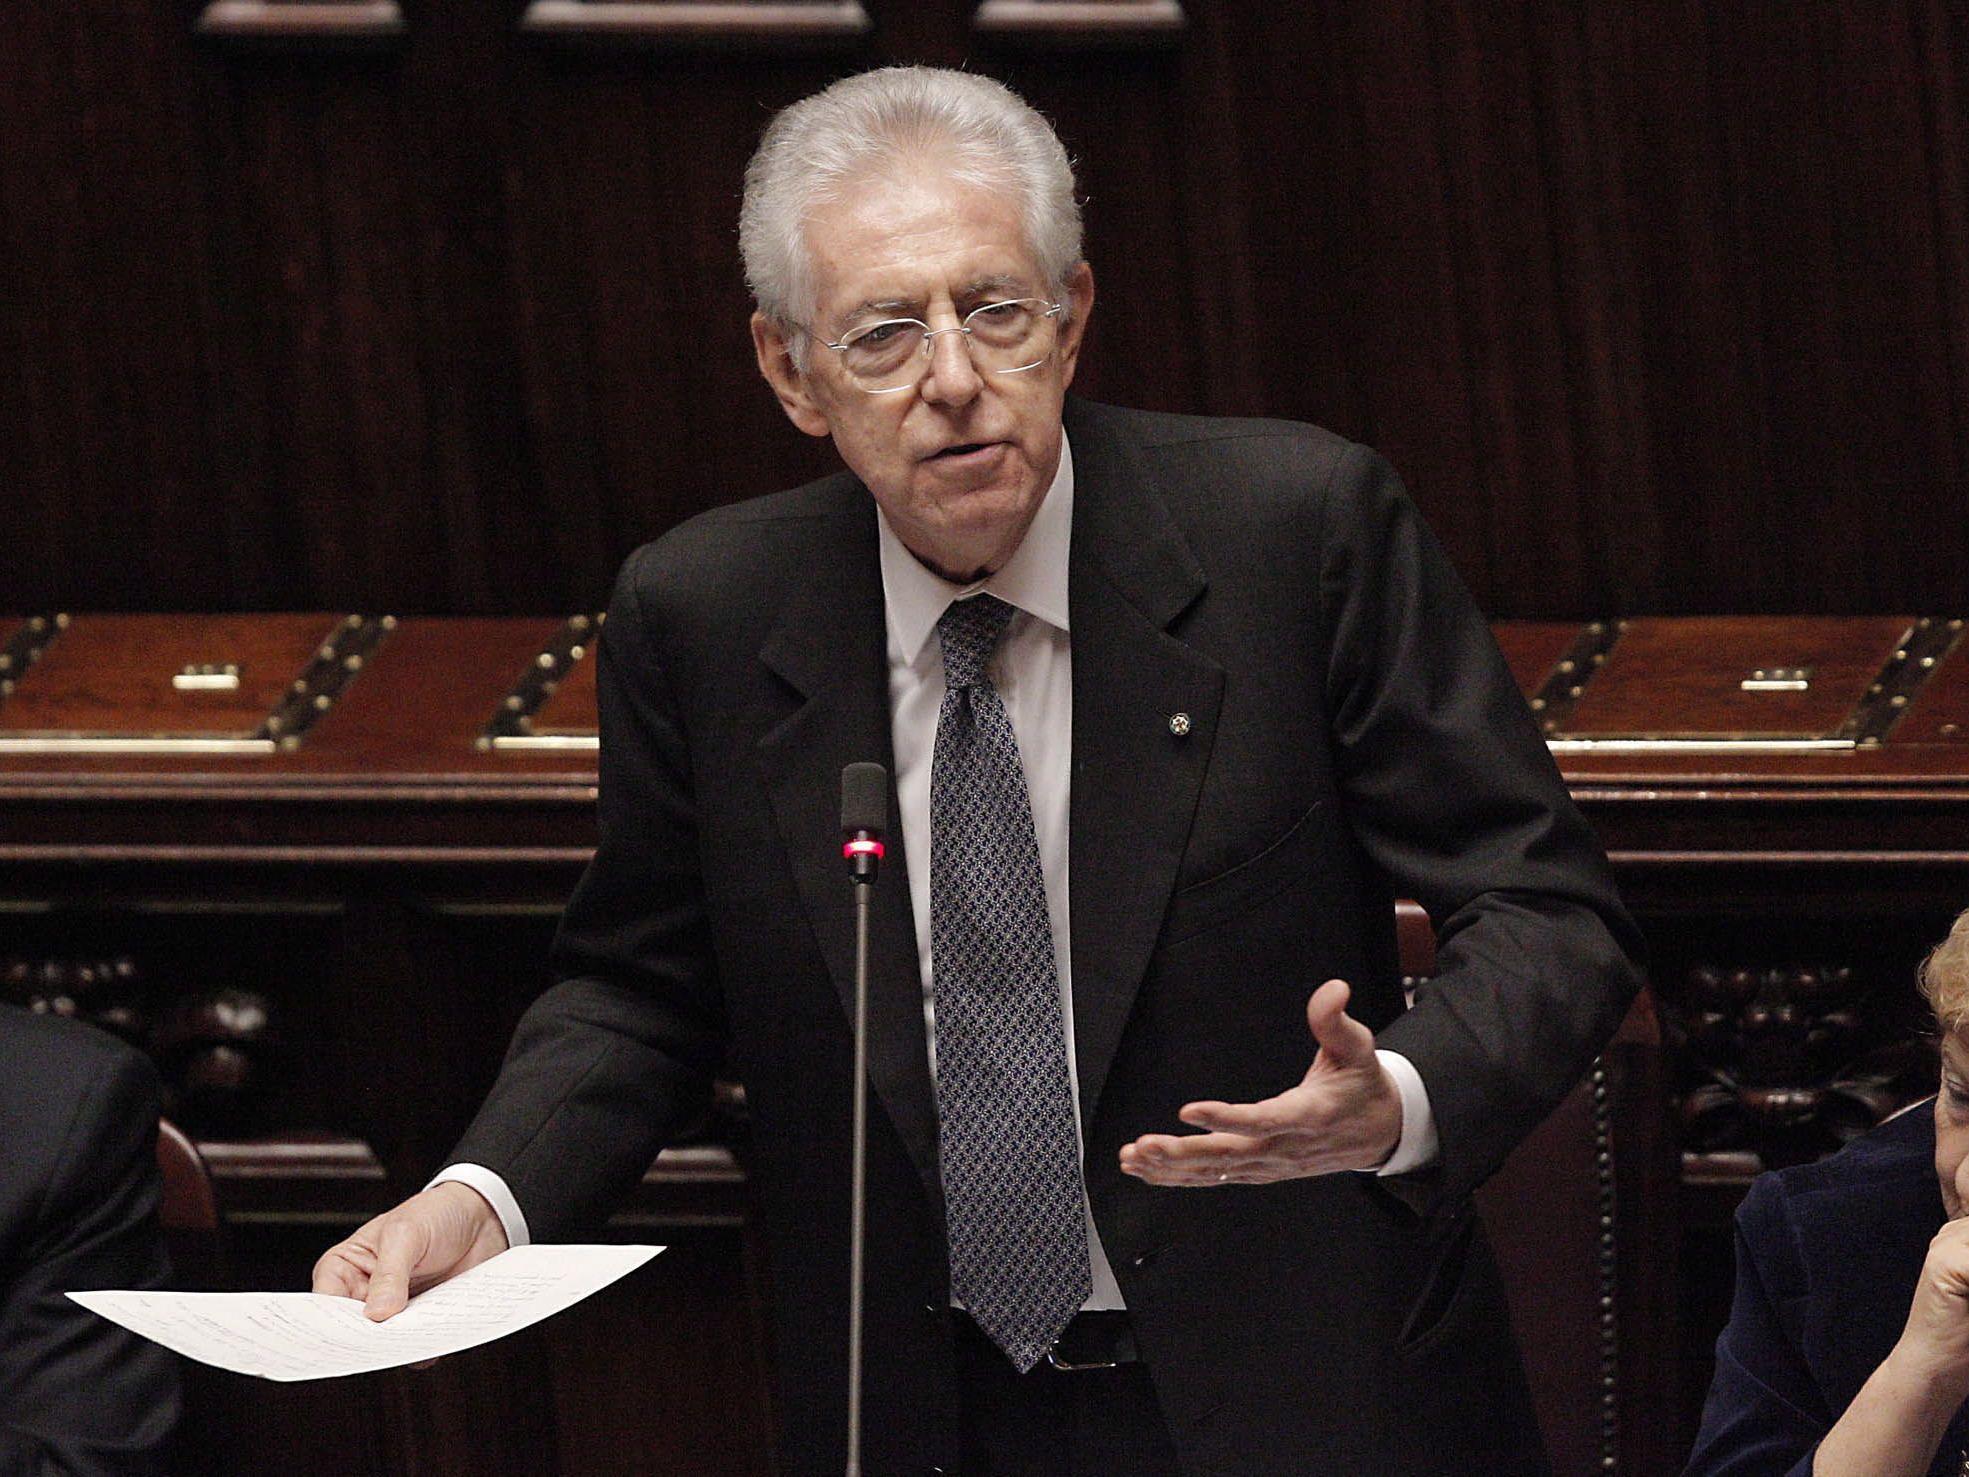 Die Regierung Monti will auch die Zahl der Abgeordneten reformieren.